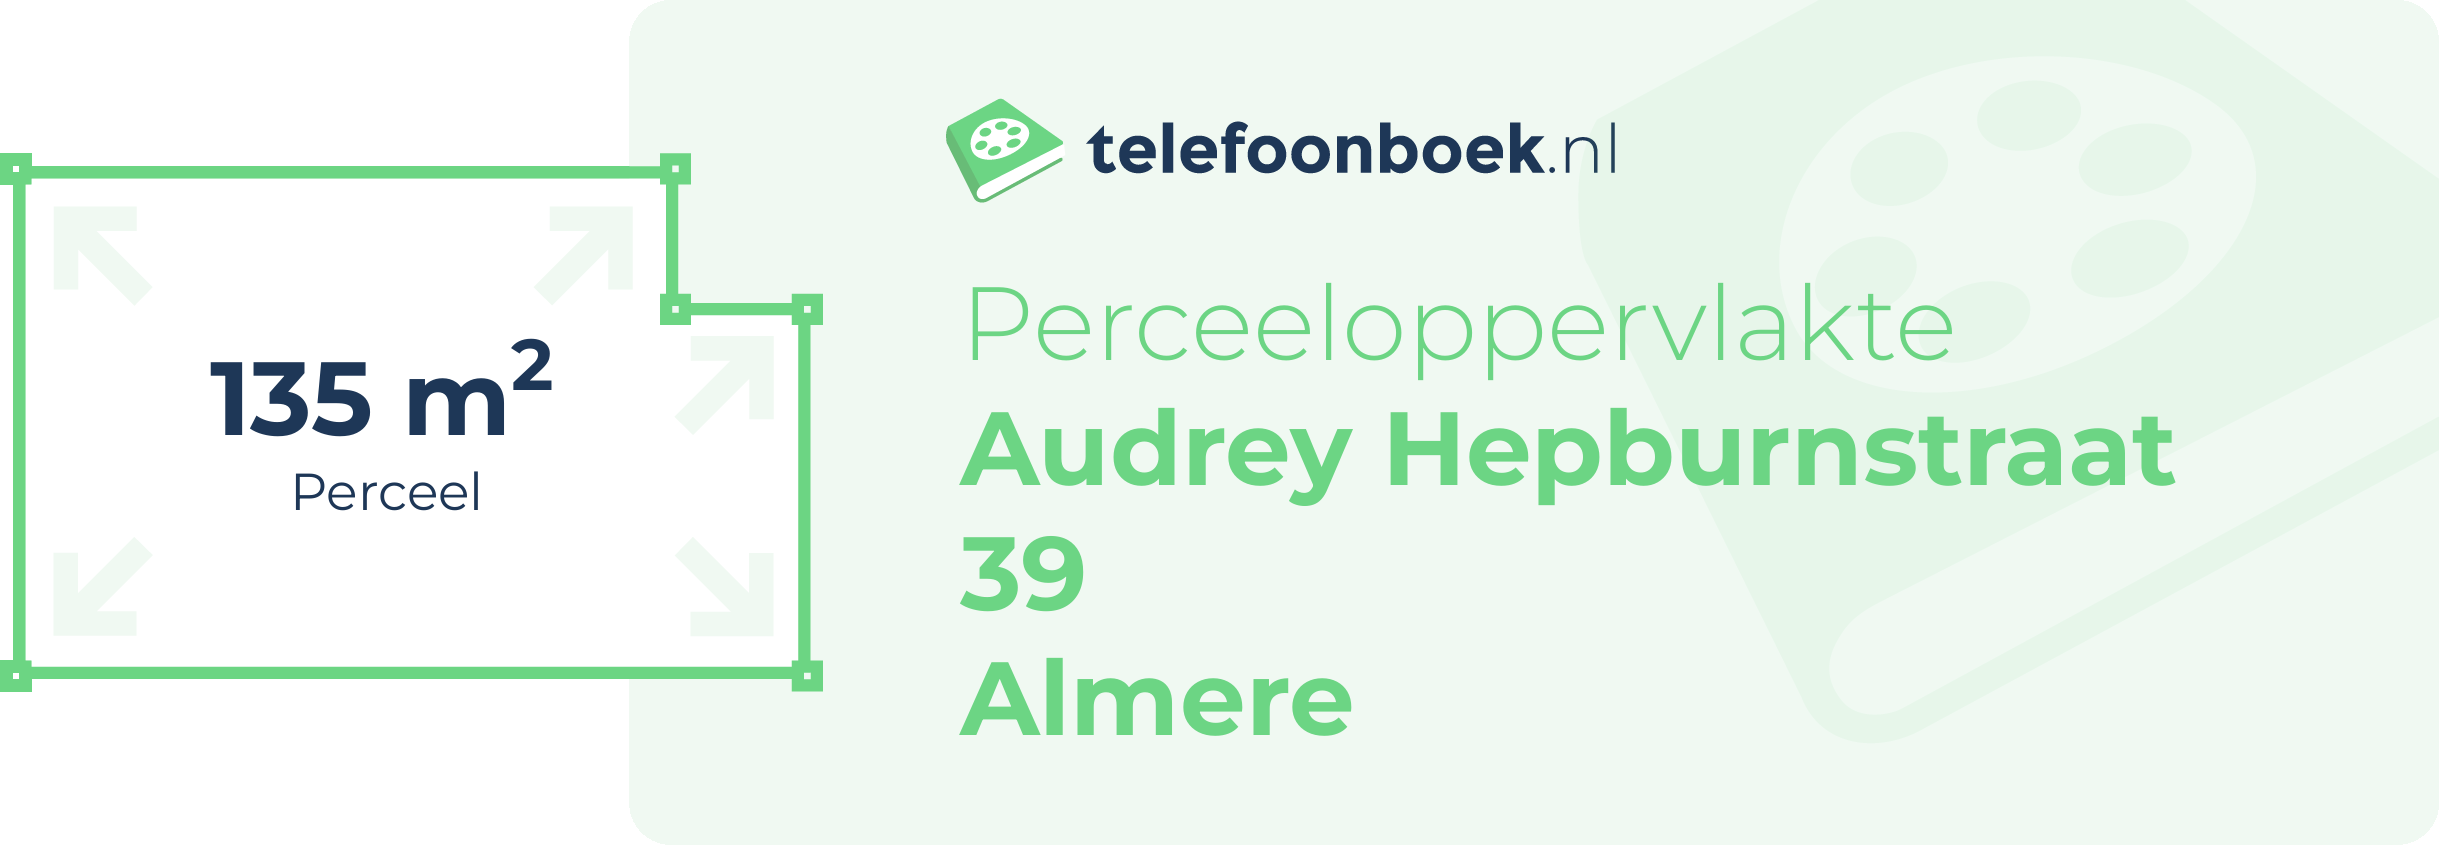 Perceeloppervlakte Audrey Hepburnstraat 39 Almere